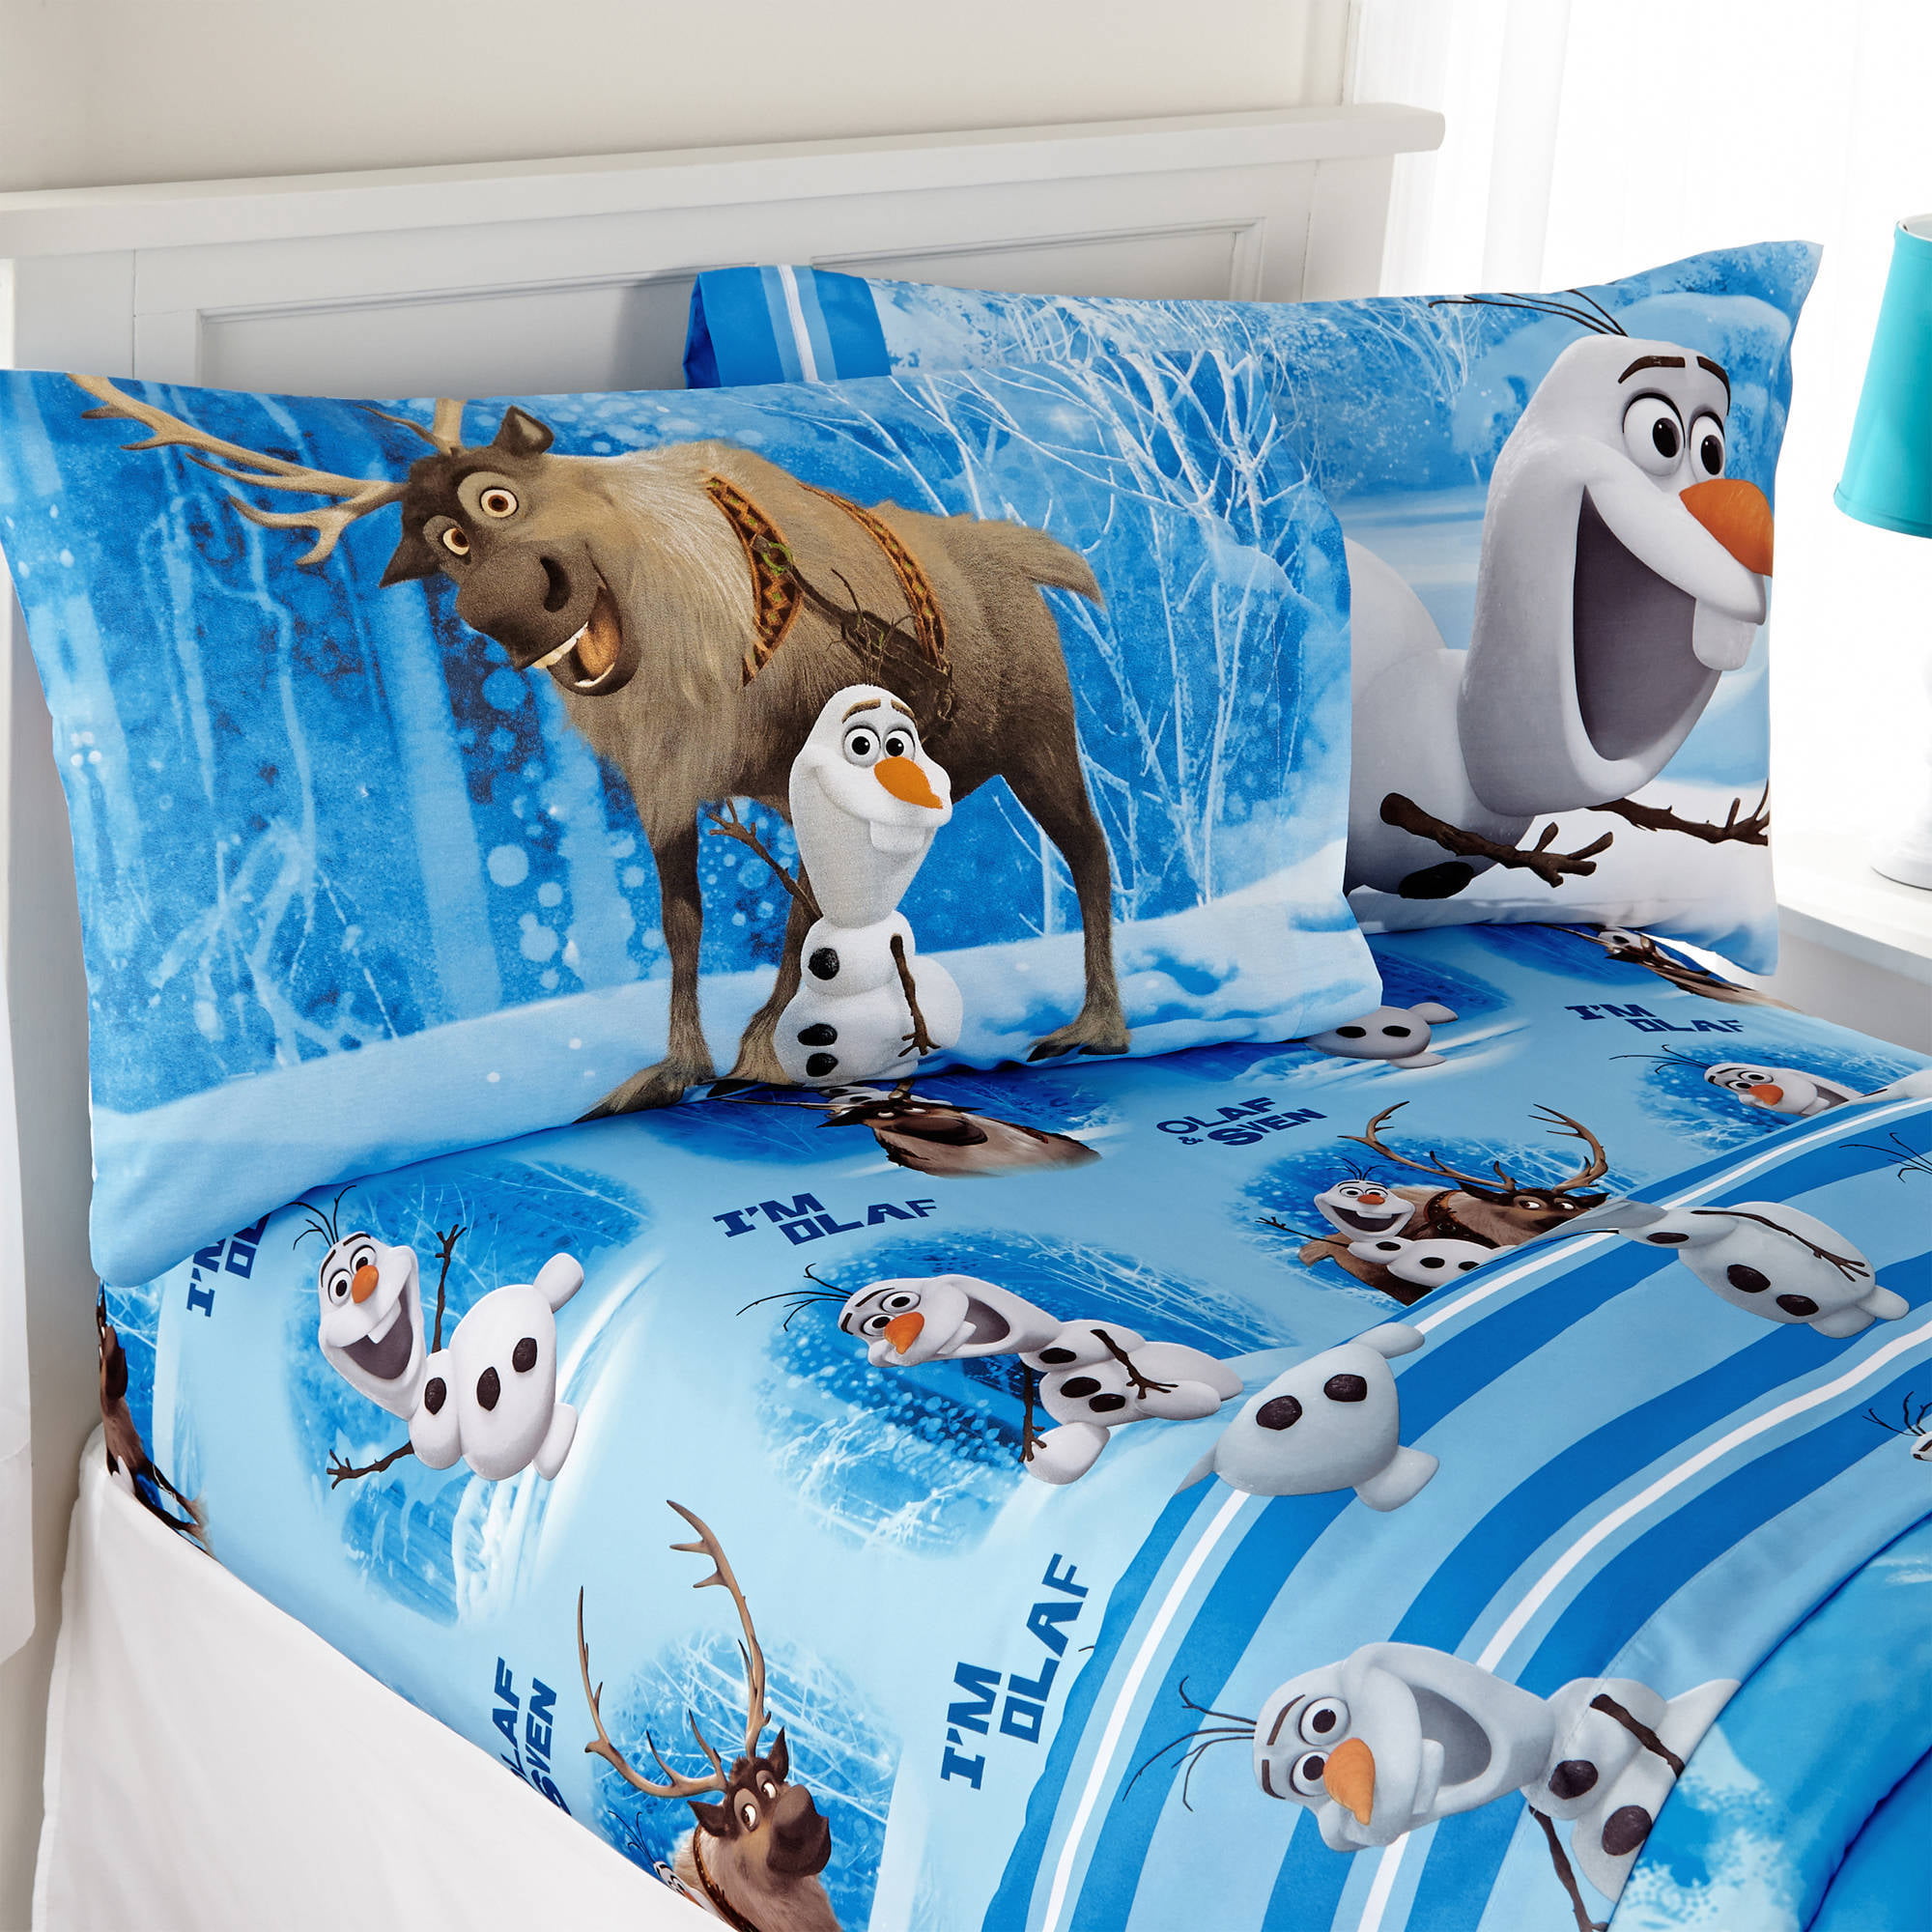 Disney Frozen Olaf Twin Sheet Set  Microfiber Ultra Soft 